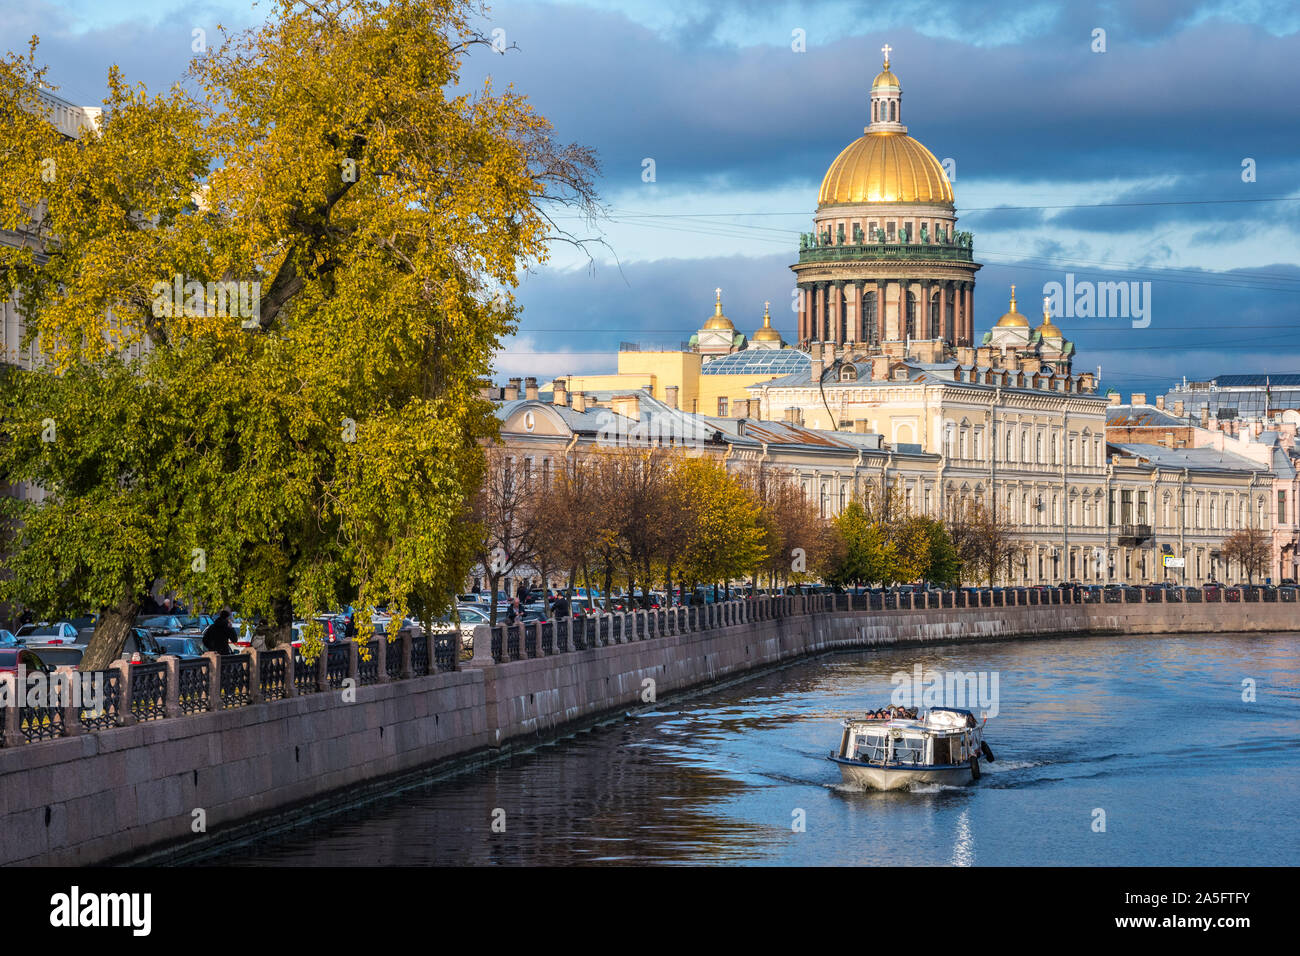 Saint-pétersbourg, Russie - 15 octobre 2019 : une excursion en bateau le long de la rivière Moïka passé la Cathédrale Saint Isaac (Isaakievskiy Sobor). Banque D'Images